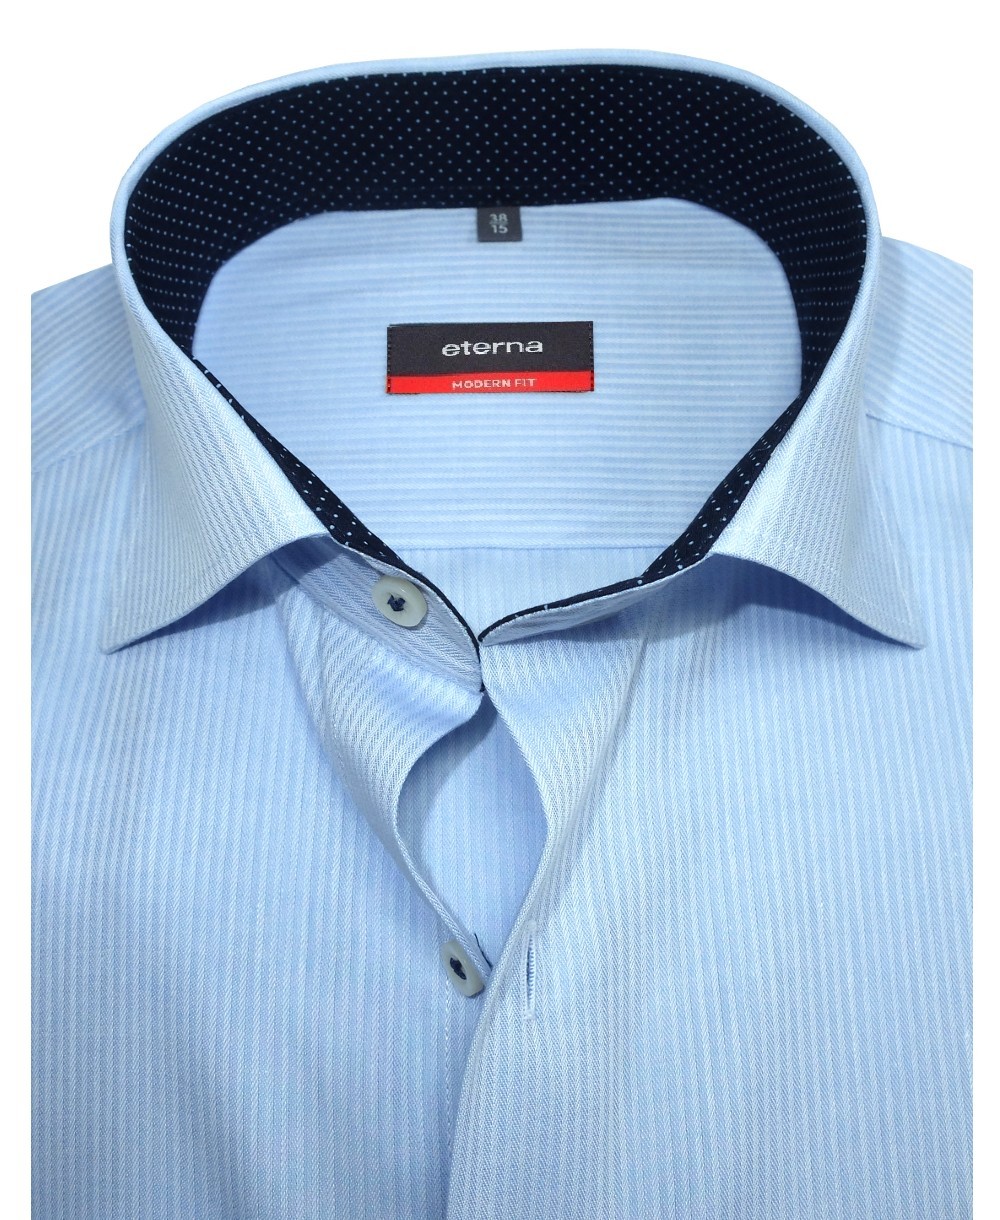 eterna Modern Fit Langarmhemd hellblau Webstreifendesign - Hochwertige  Herrenmode führender Marken zu fairen